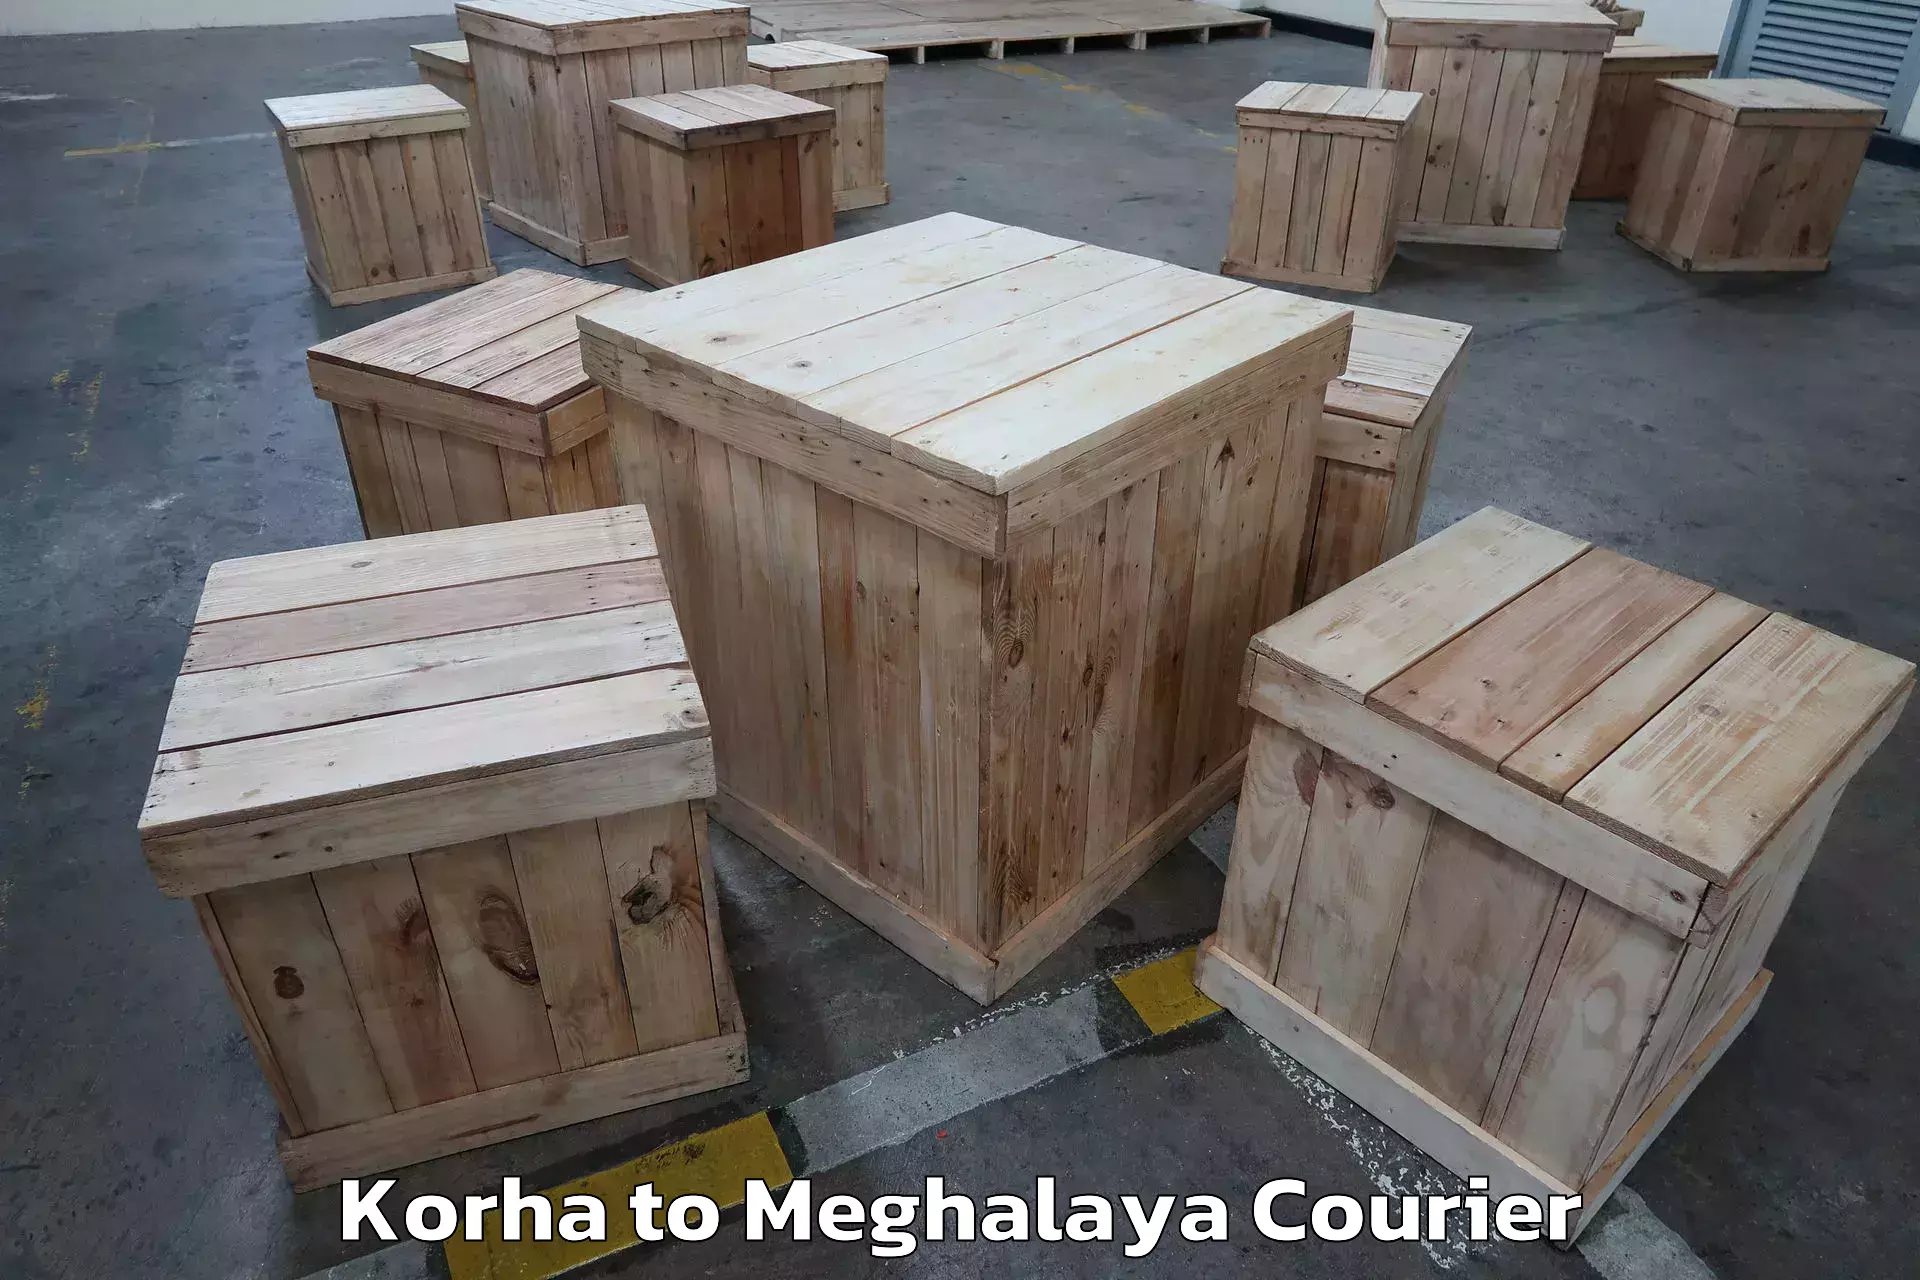 Professional moving company Korha to Phulbari